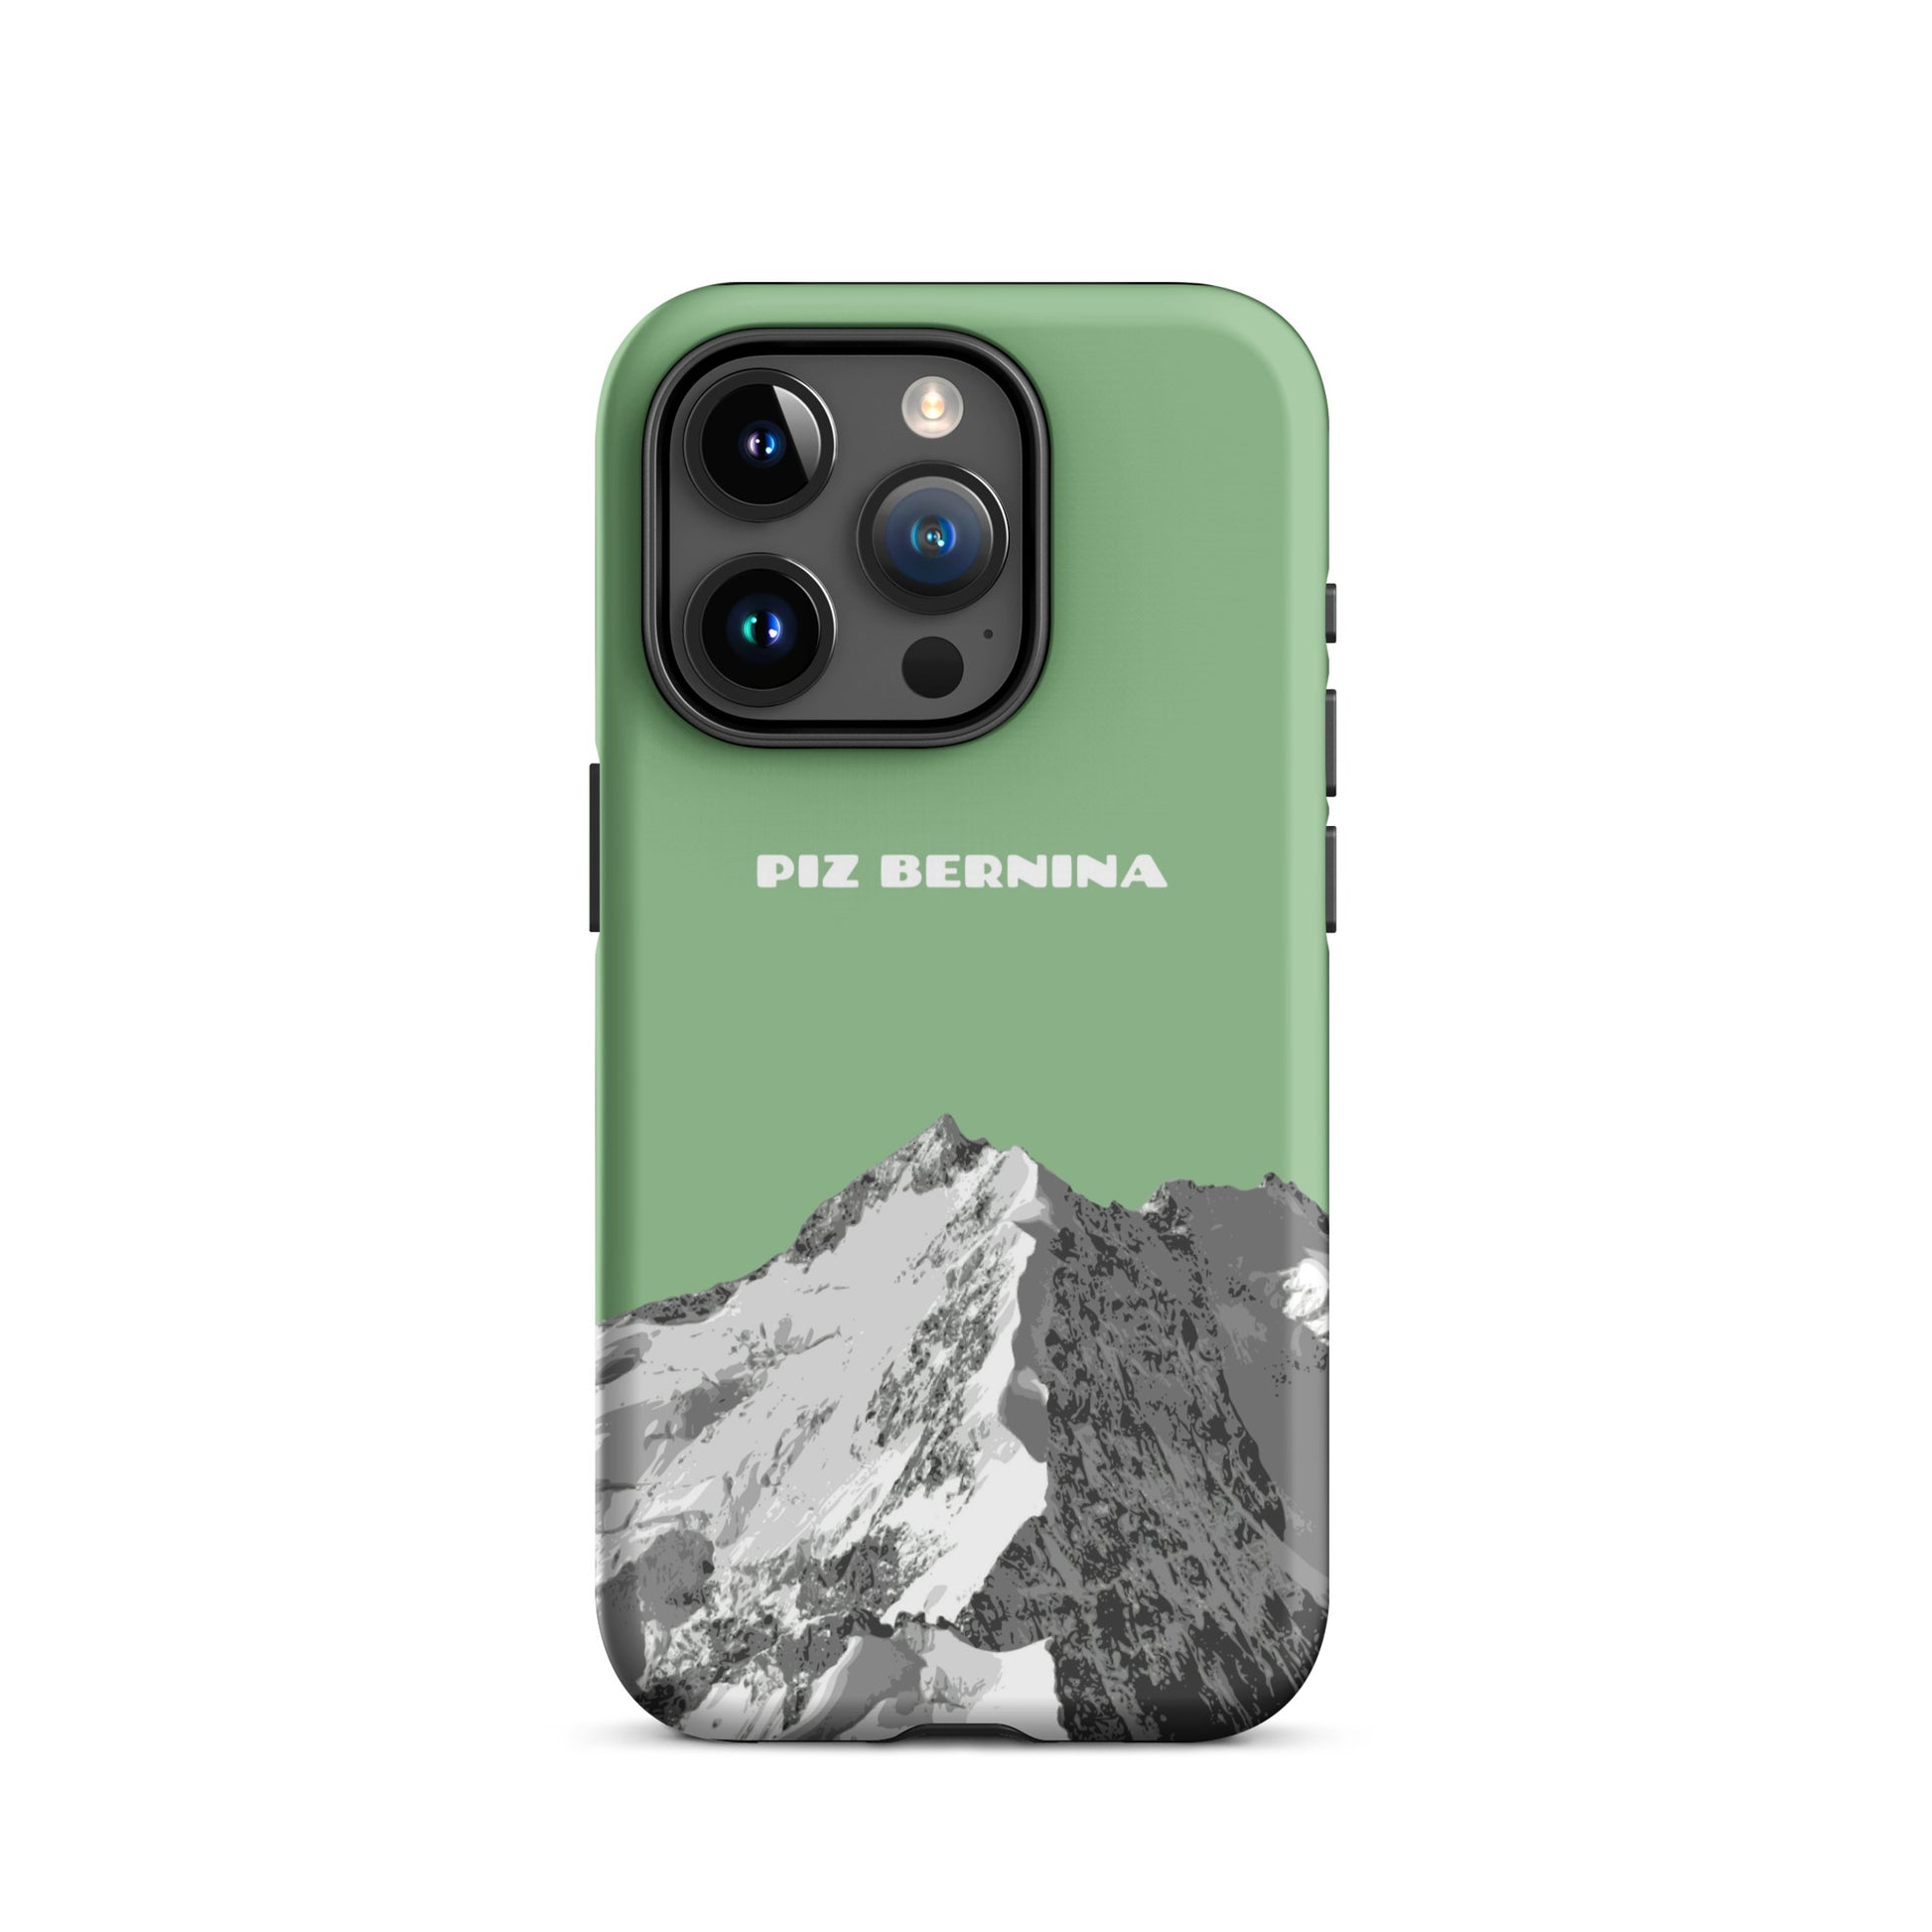 Hülle für das iPhone 15 Pro von Apple in der Farbe Hellgrün, dass den Piz Bernina in Graubünden zeigt.